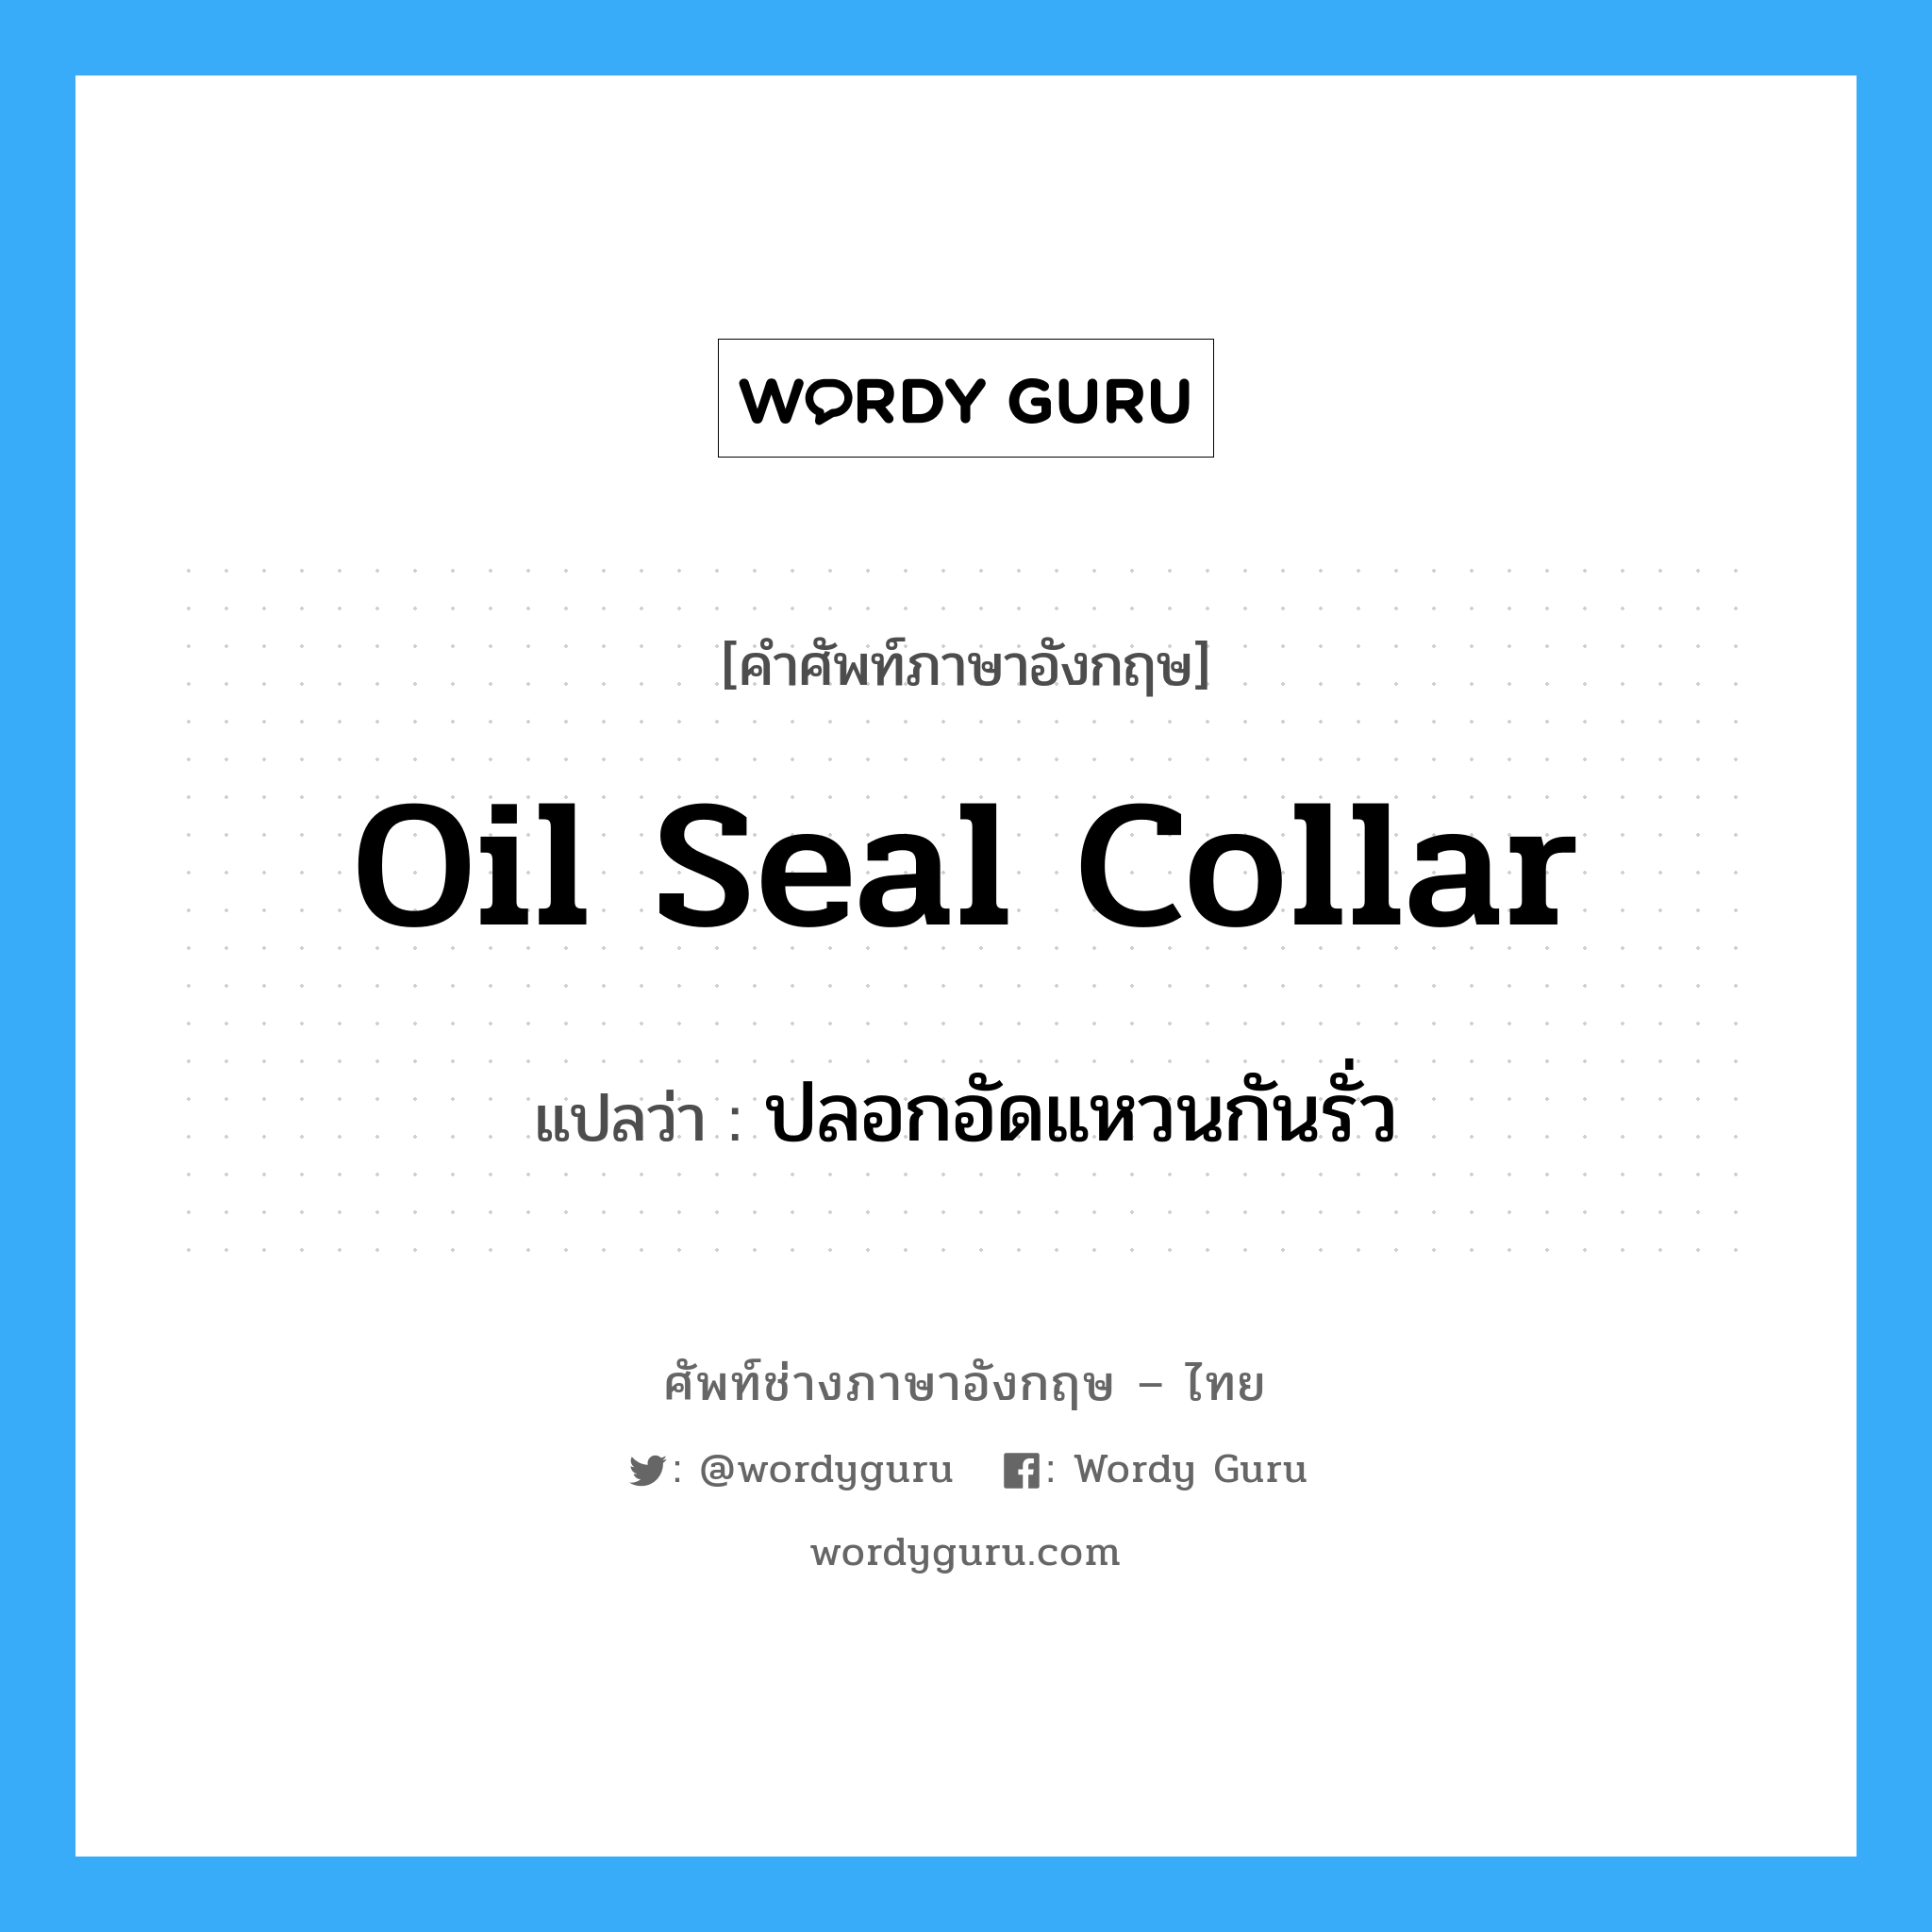 oil seal collar แปลว่า?, คำศัพท์ช่างภาษาอังกฤษ - ไทย oil seal collar คำศัพท์ภาษาอังกฤษ oil seal collar แปลว่า ปลอกอัดแหวนกันรั่ว